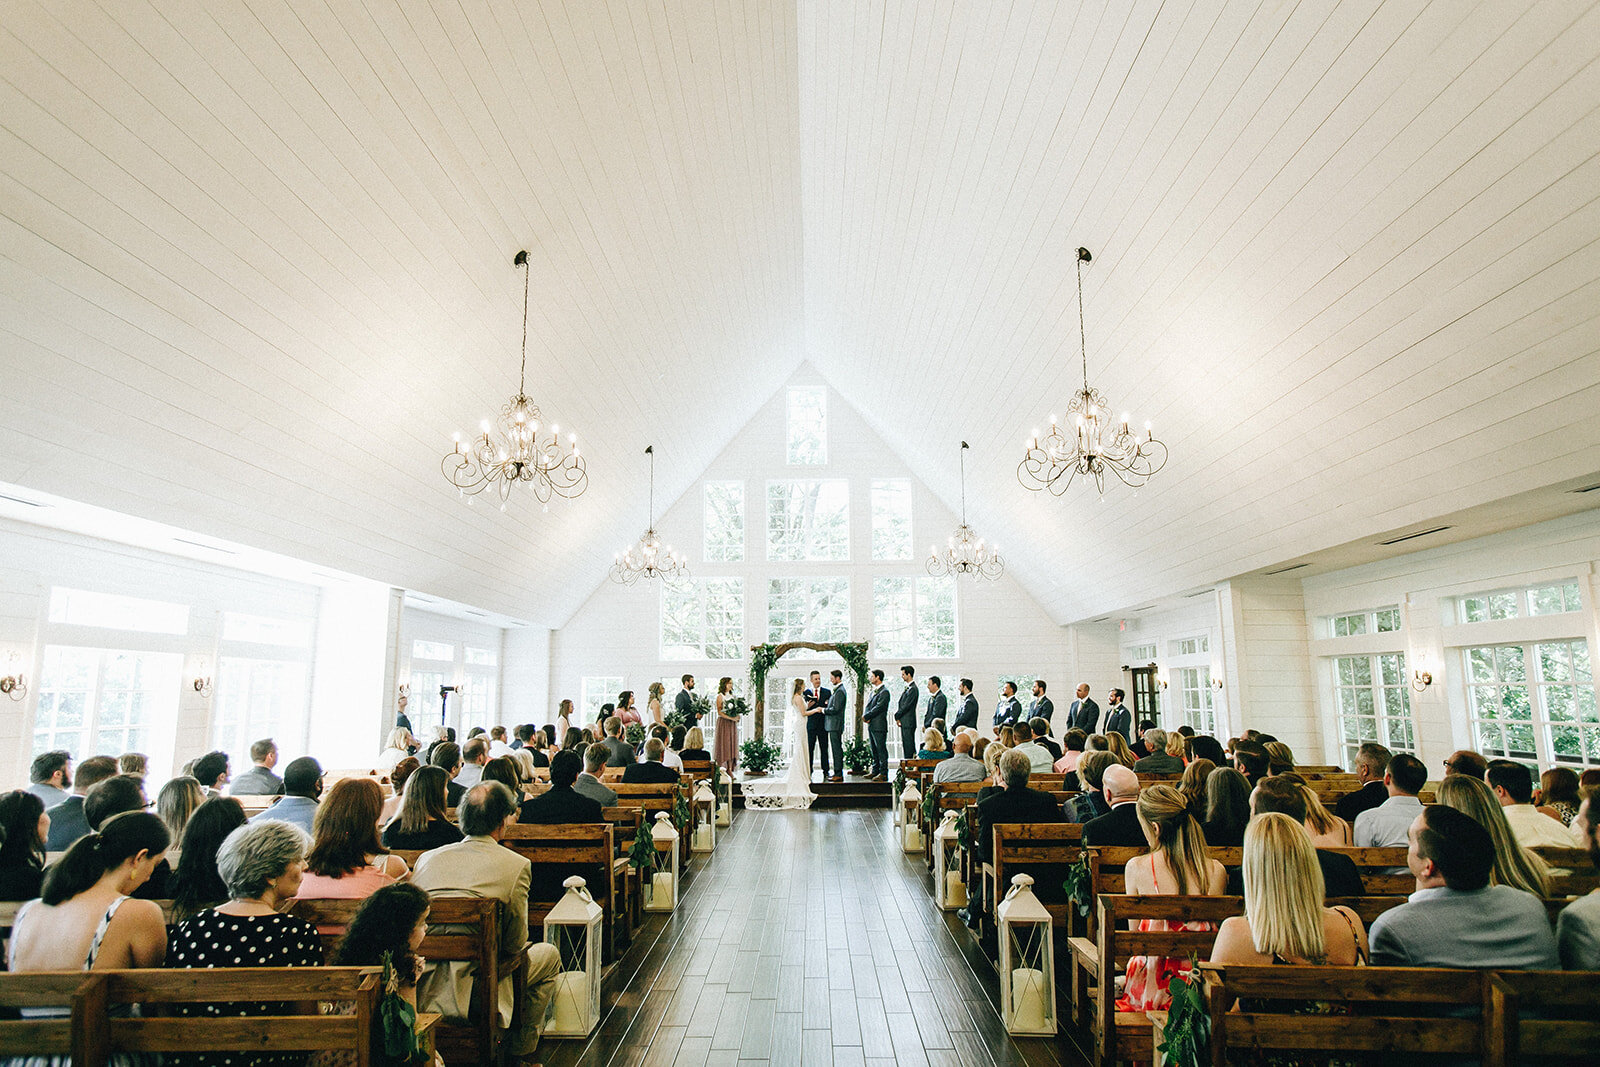  indoor wedding ceremony with greenery decor 